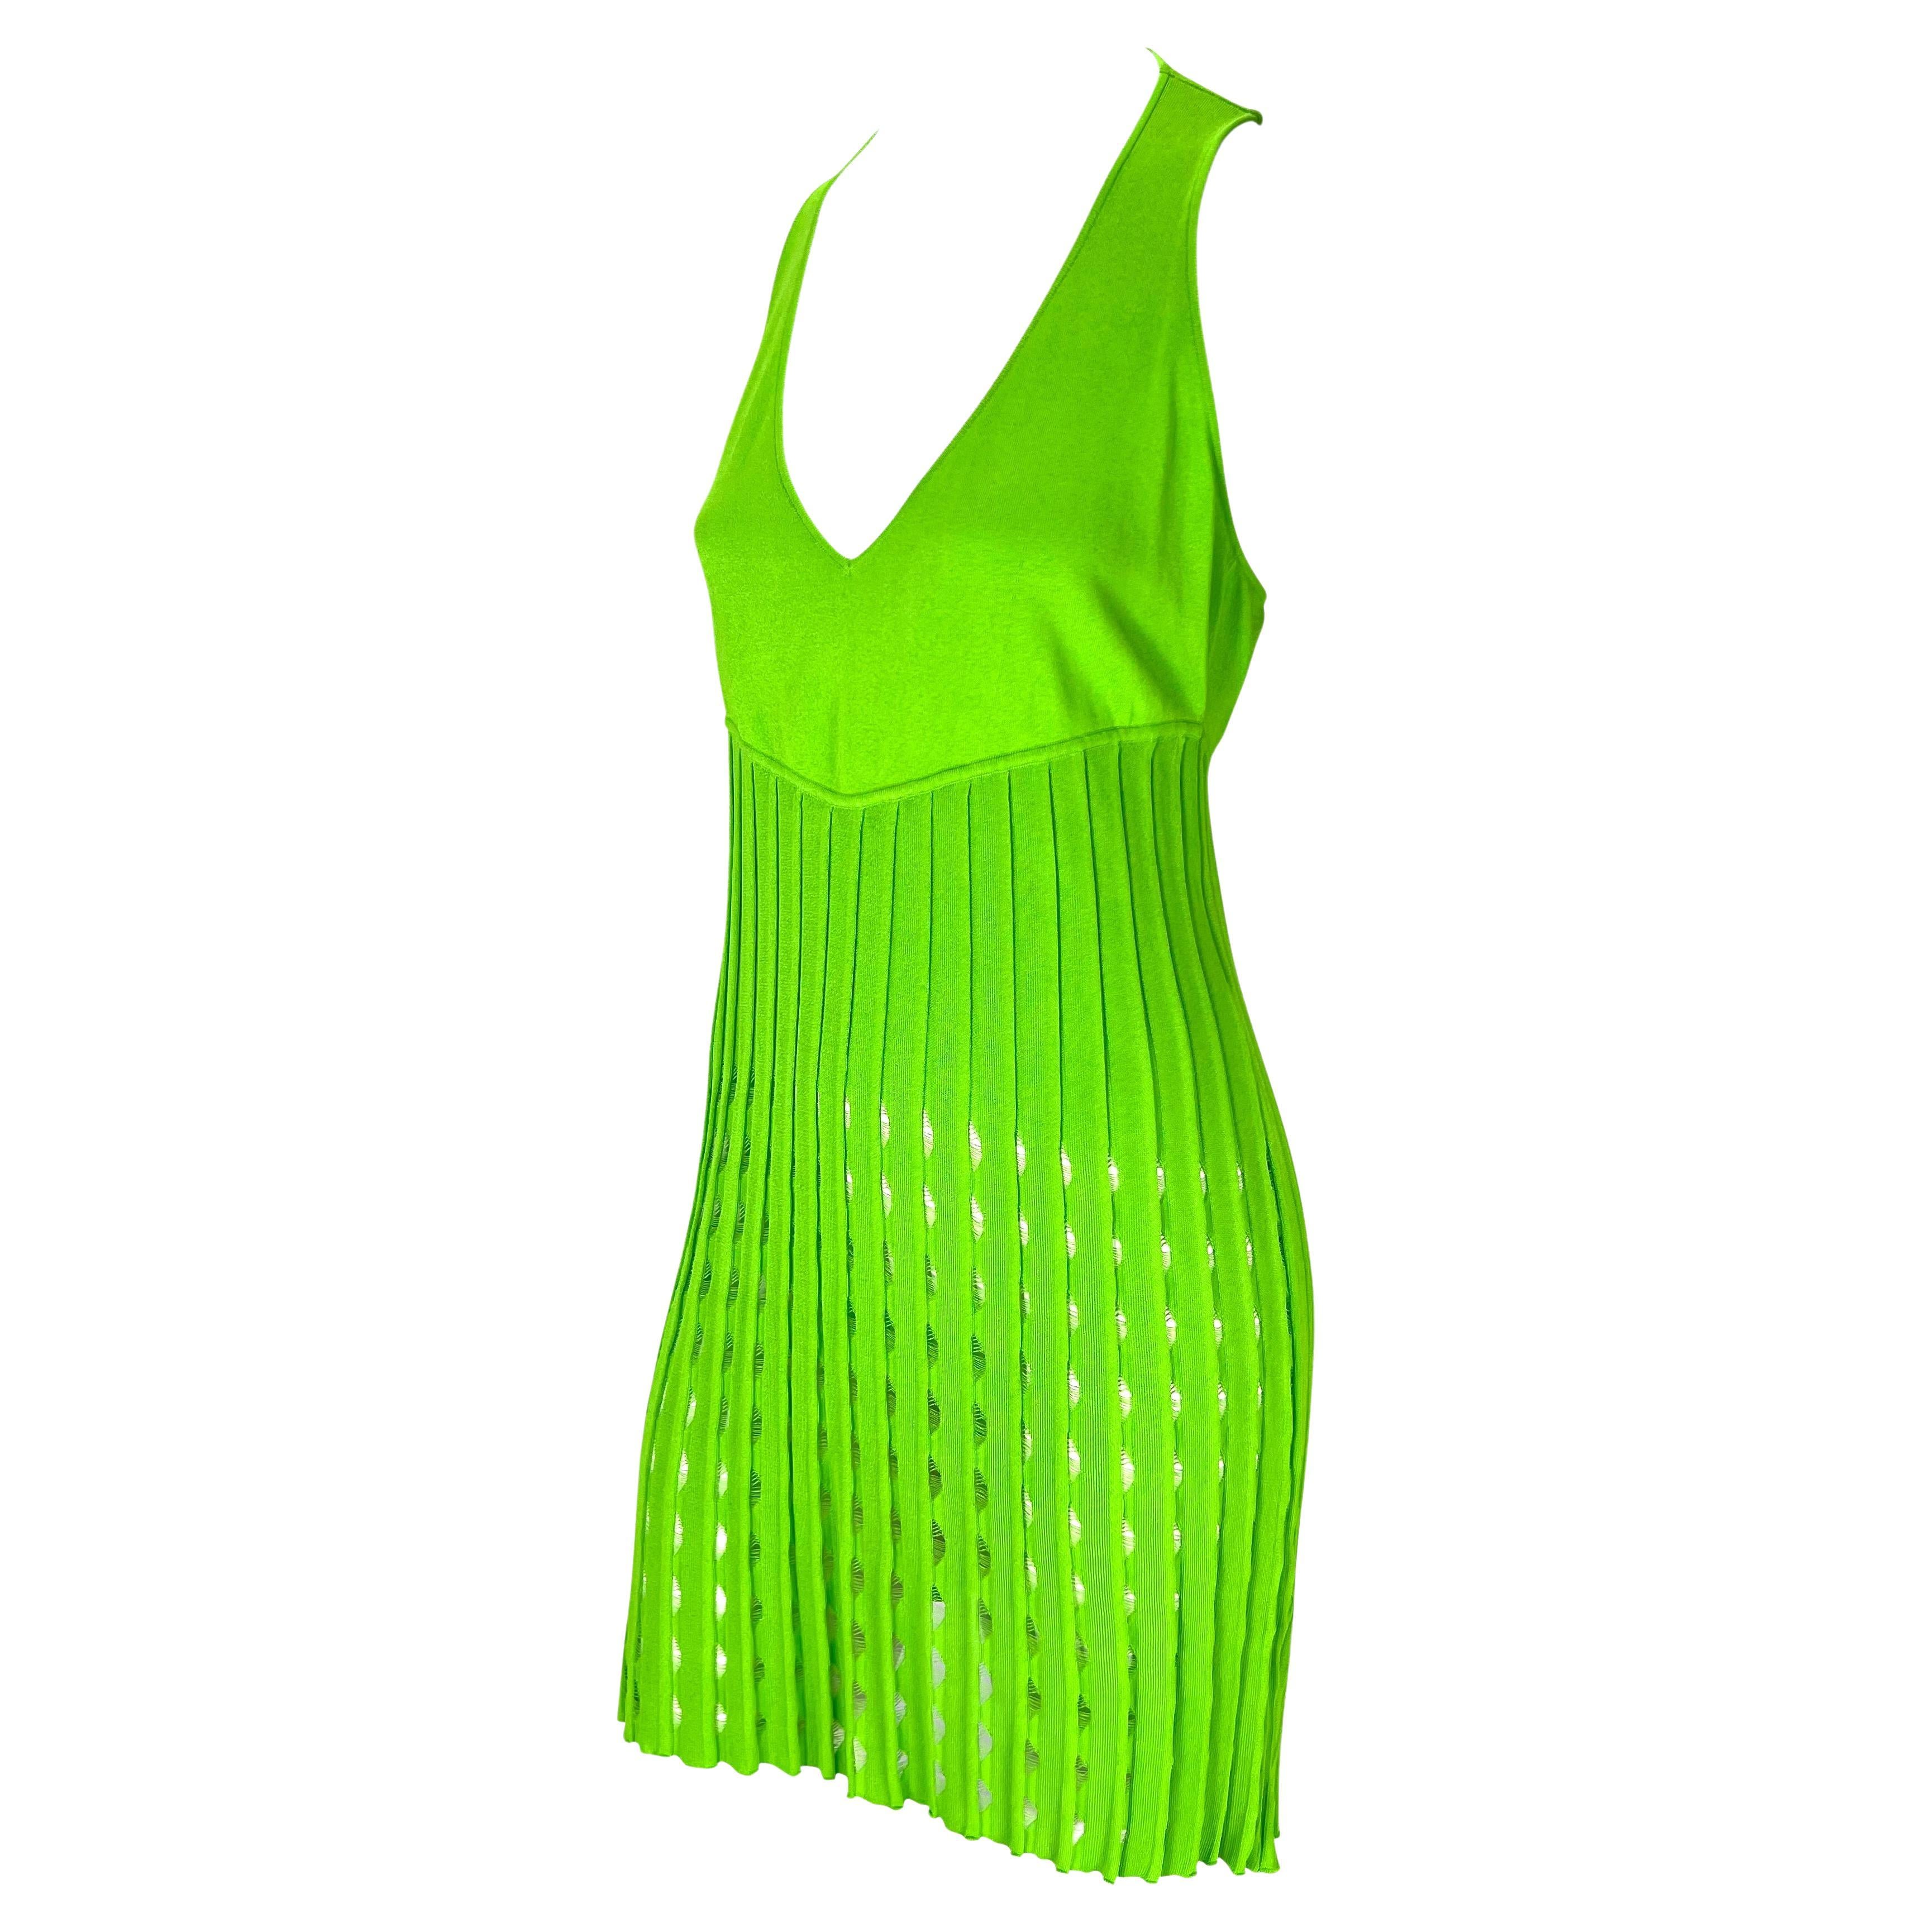 donatella versace green dress